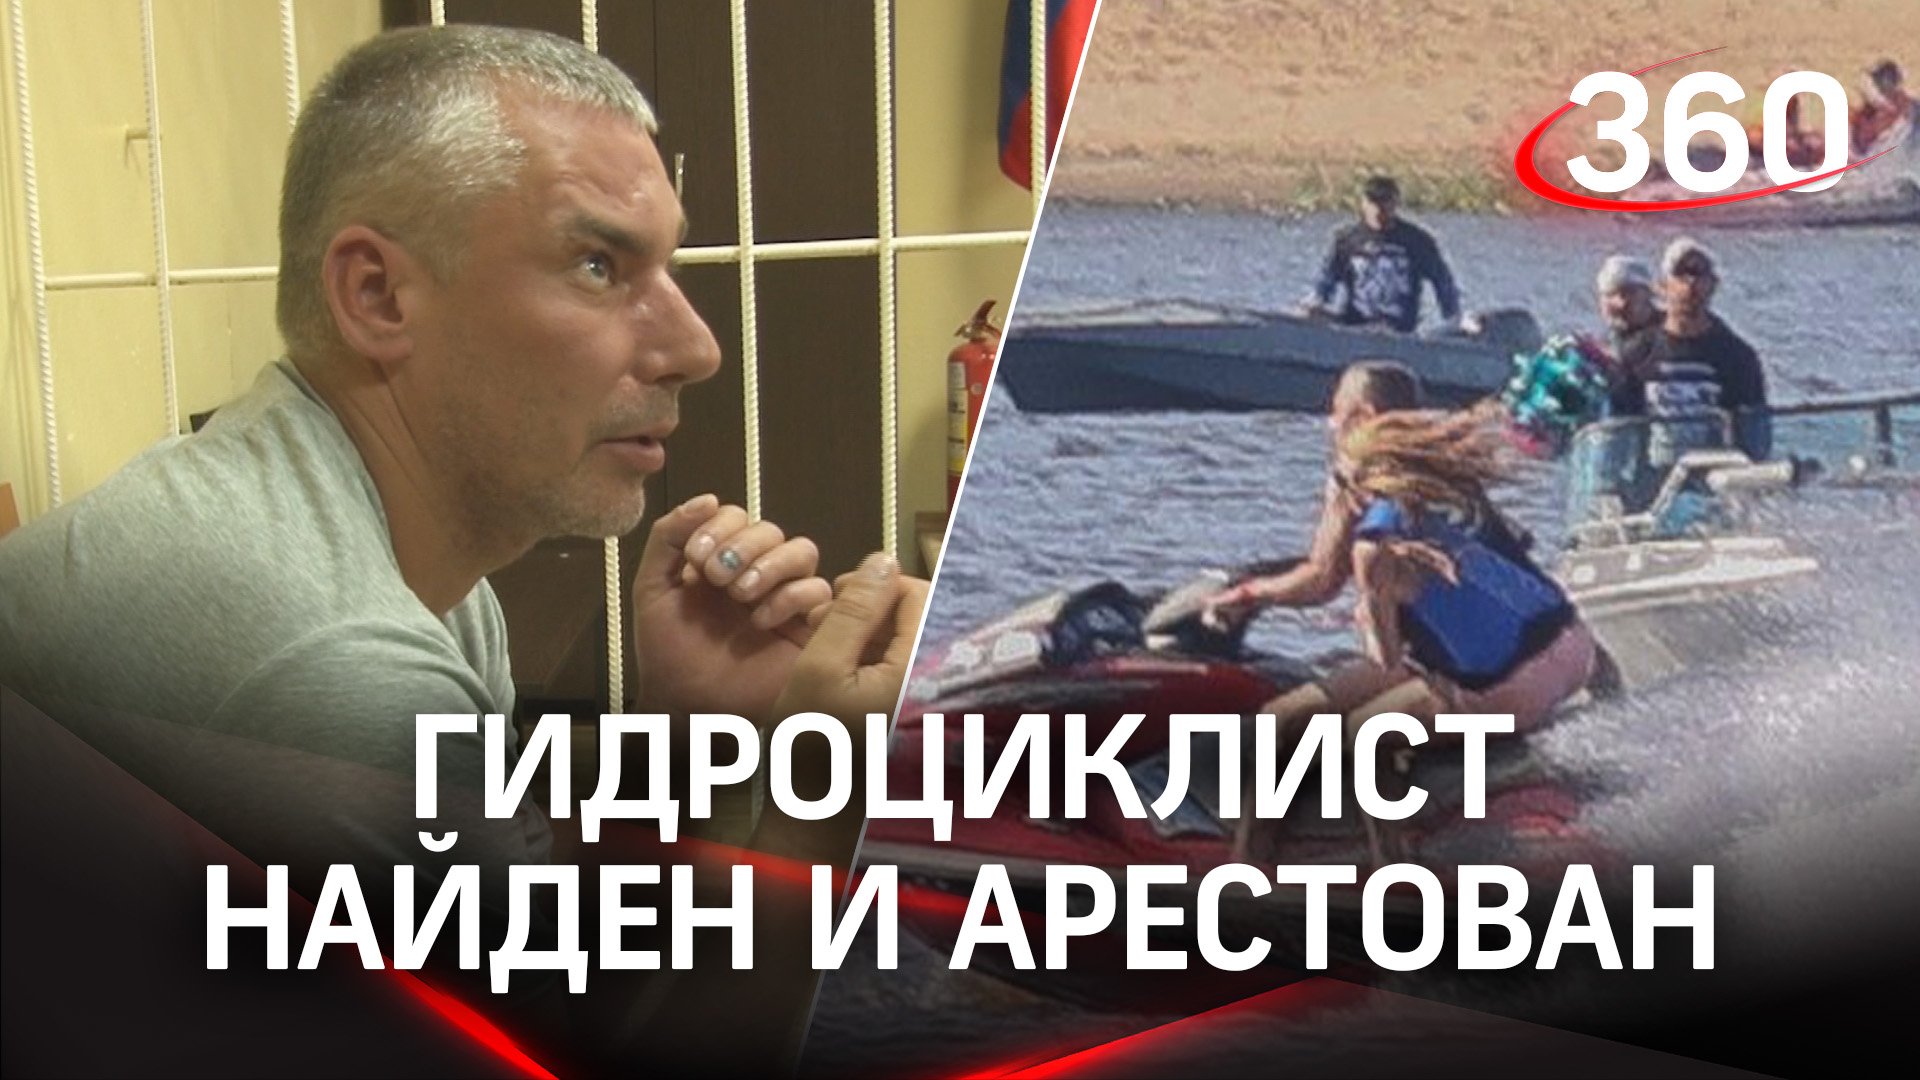 Гидроциклист, протаранивший пловцов в Нижнем Новгороде, найден и арестован